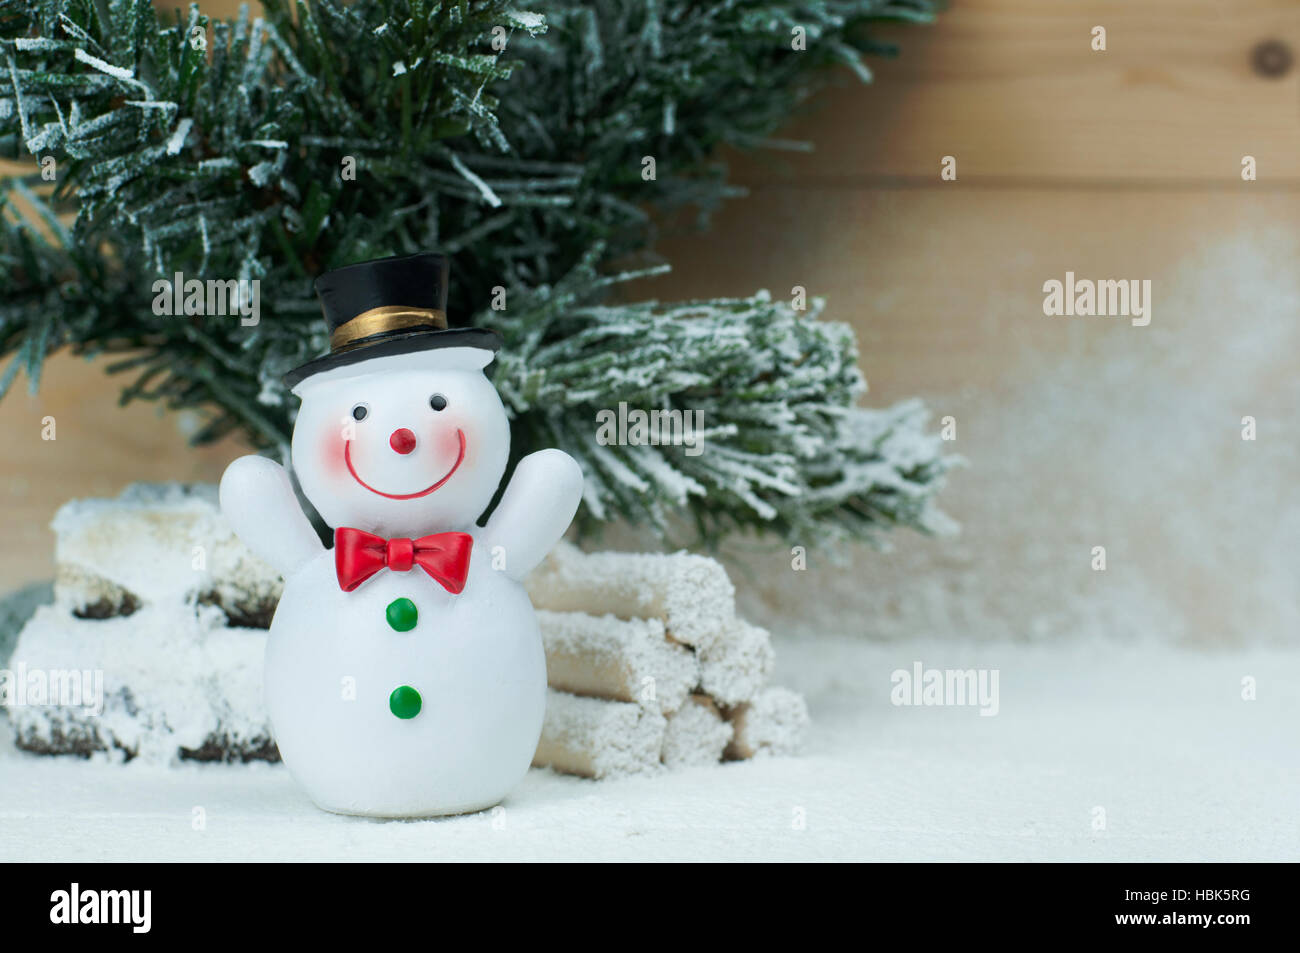 Schnee-Mann-Figur auf Schnee und Kiefer Baum. Weihnachten Deko-Konzept. Stockfoto